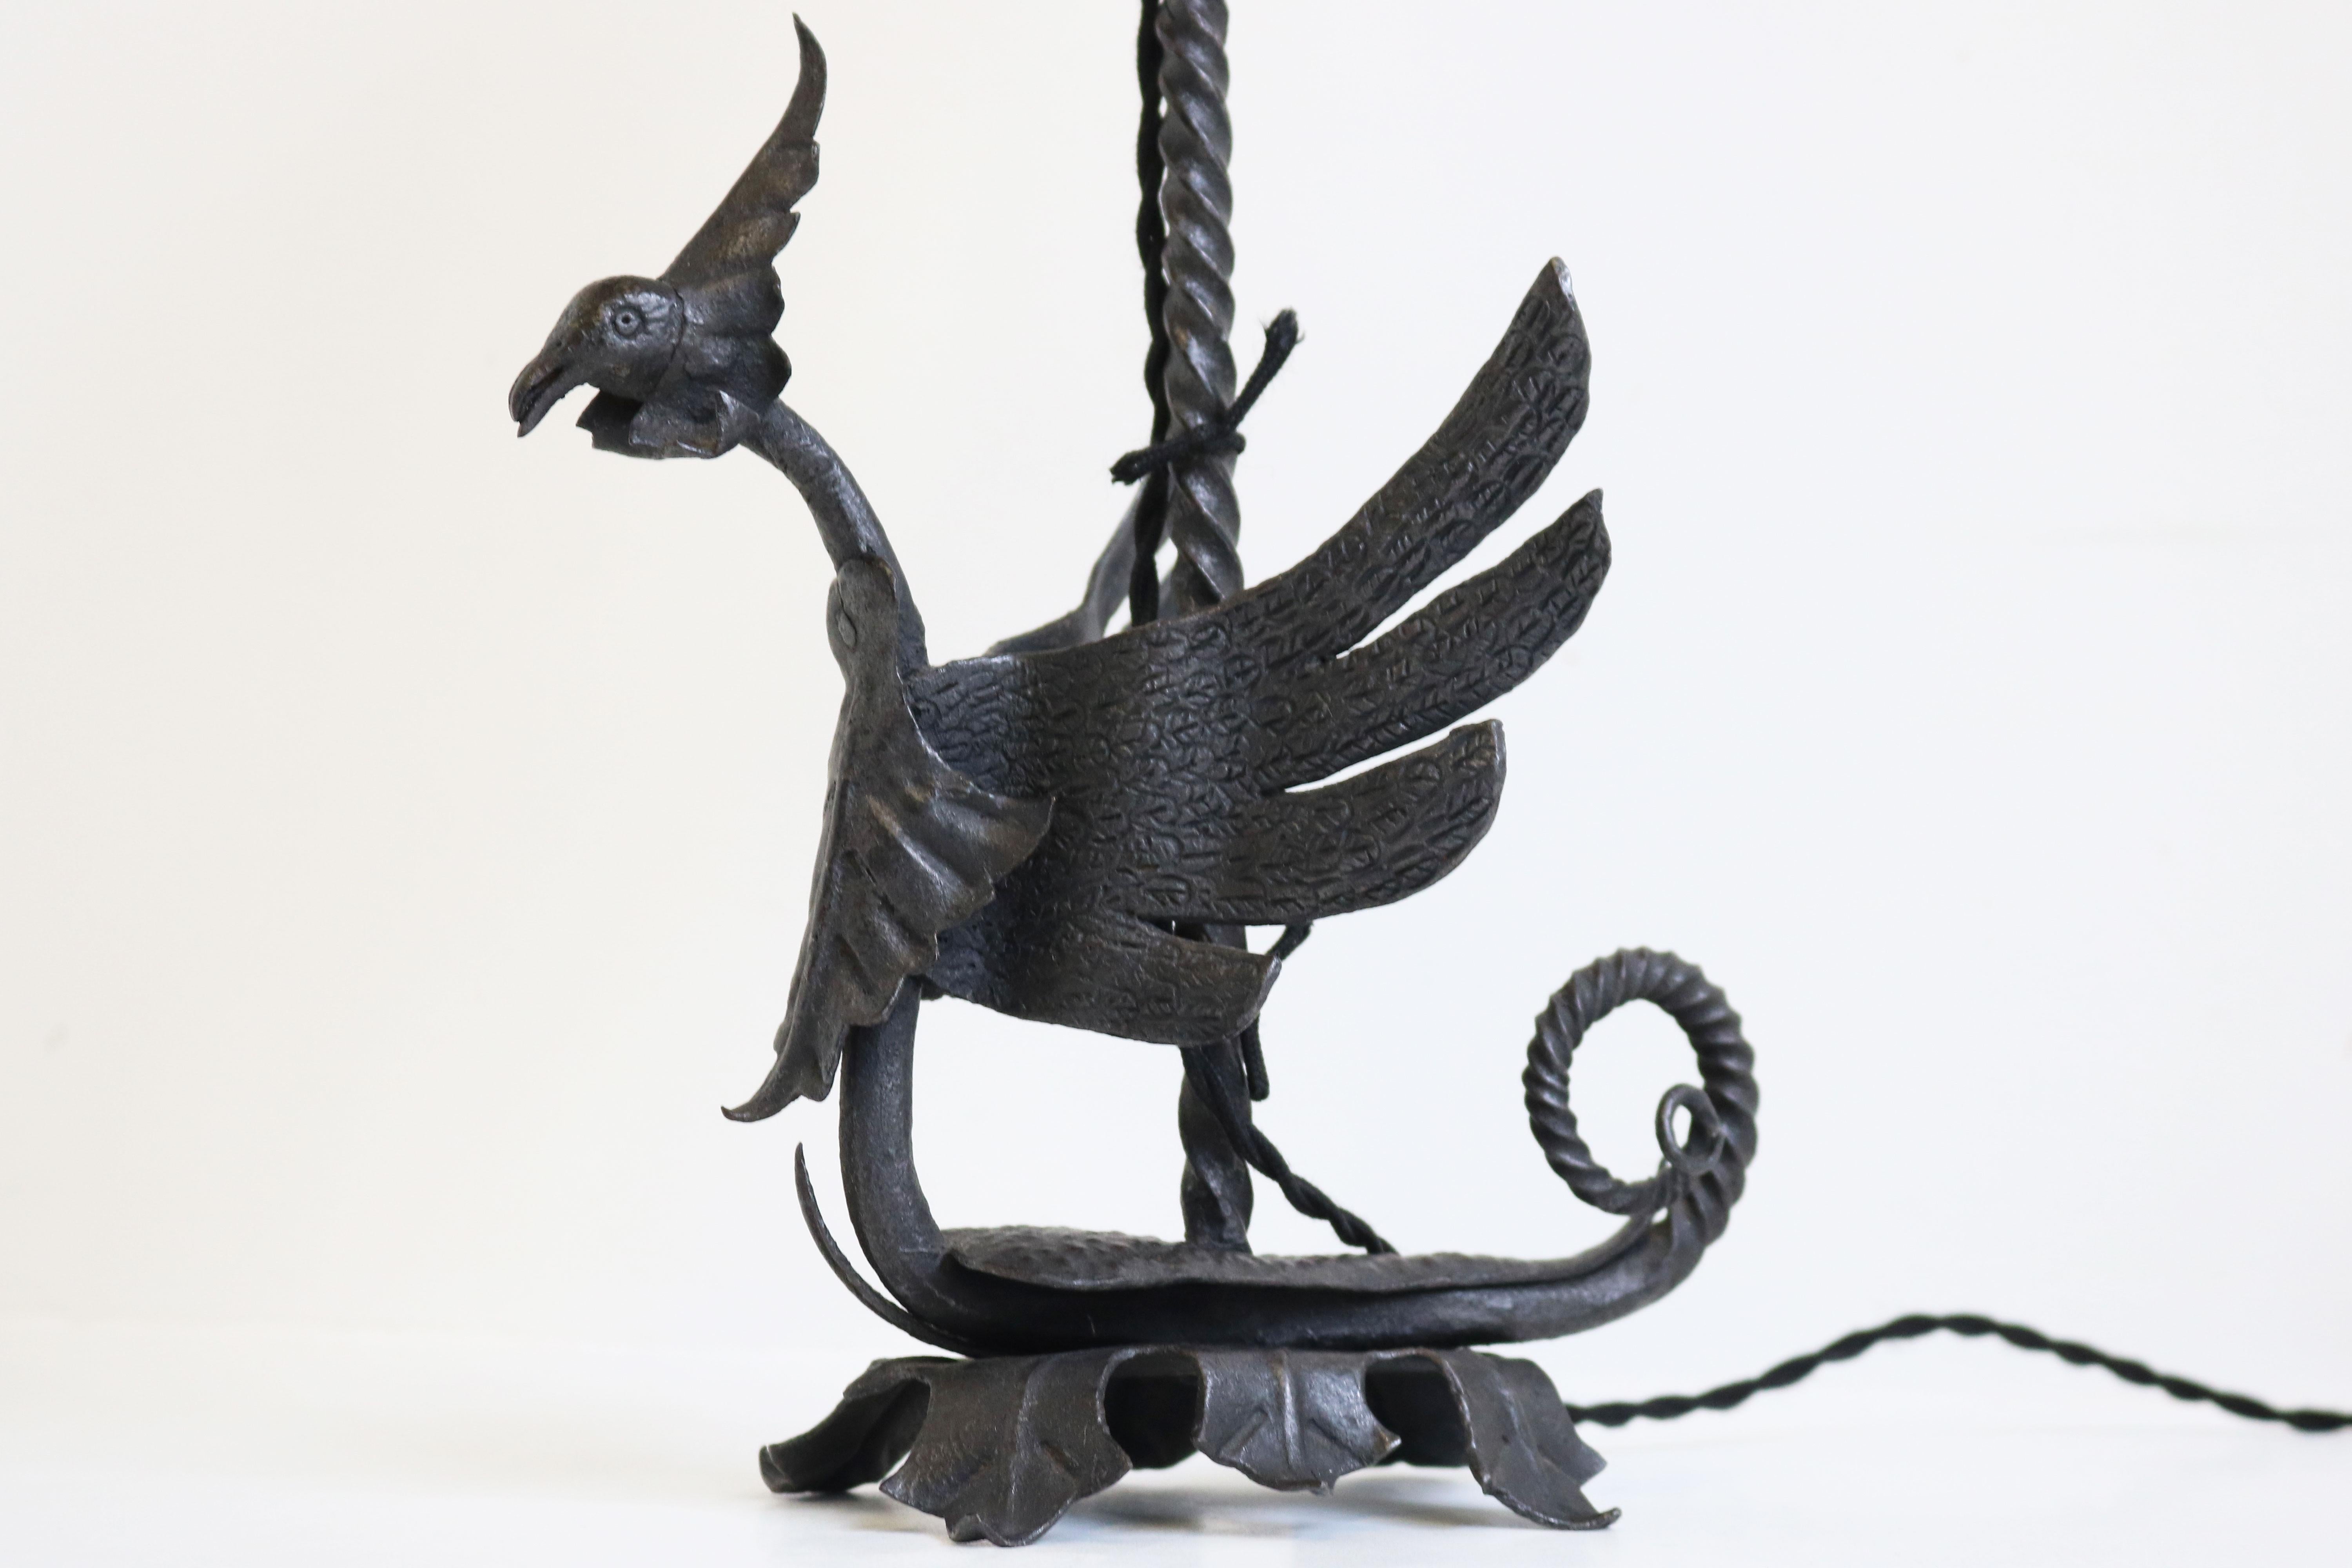 Magnifique lampe de table de style Arts & Crafts par le forgeron italien Umberto Bellotto, fabriquée à Venise en 1910. 
Étonnant dragon allégorique détaillé en fer forgé entièrement réalisé à la main. Les détails de la queue et des ailes sont